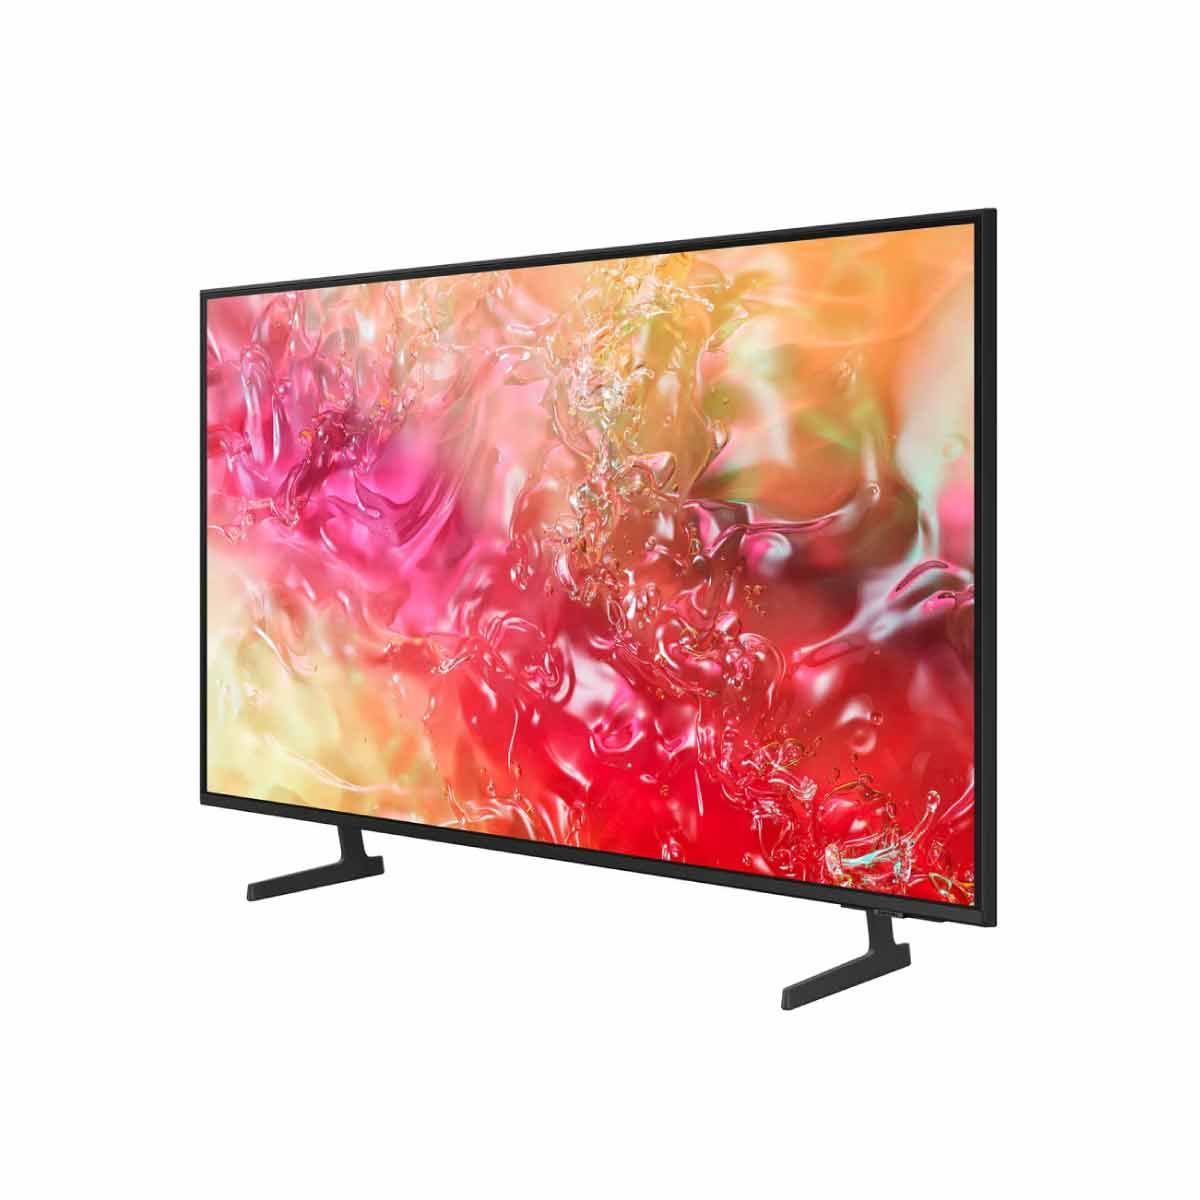 SAMSUNG LED Crystal UHD Smart TV 4K รุ่น UA85DU7700KXXT Smart One Remote ขนาด 85 นิ้ว